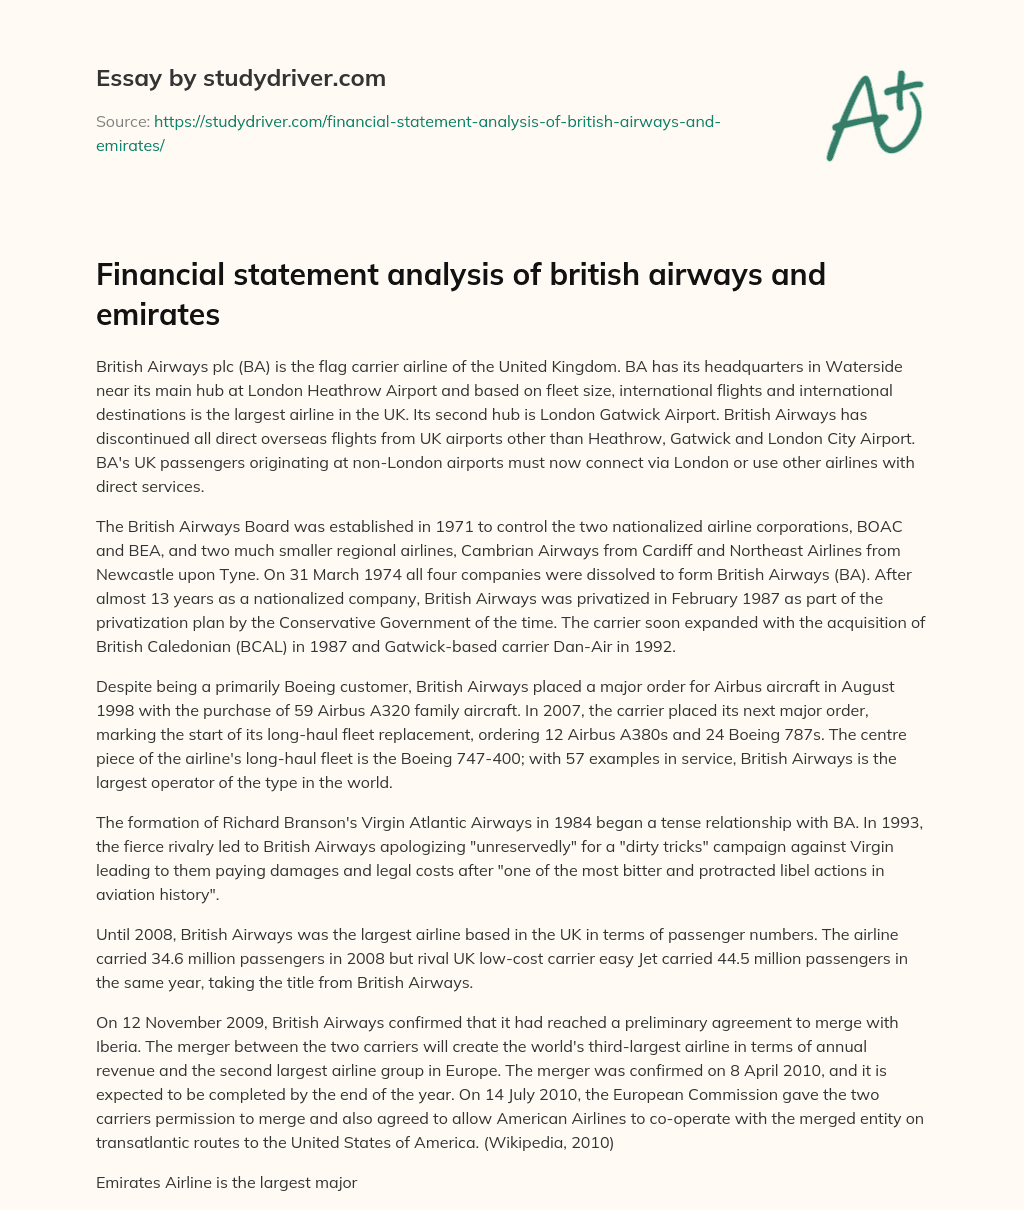 Financial Statement Analysis of British Airways and Emirates essay